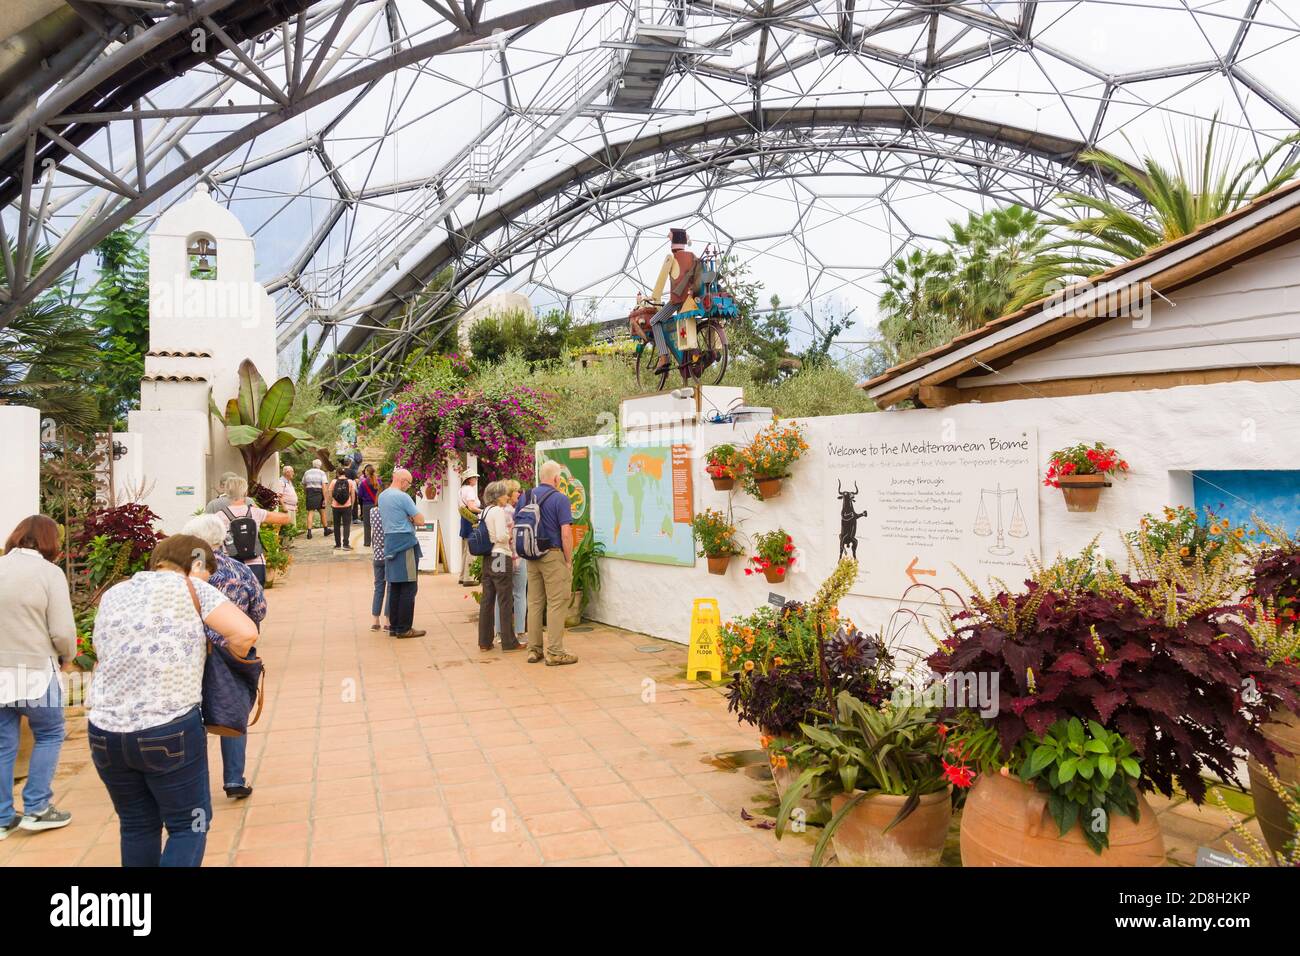 Le projet Eden biome méditerranéen une attraction touristique populaire avec jardins tropicaux abrité dans des dômes géants Banque D'Images